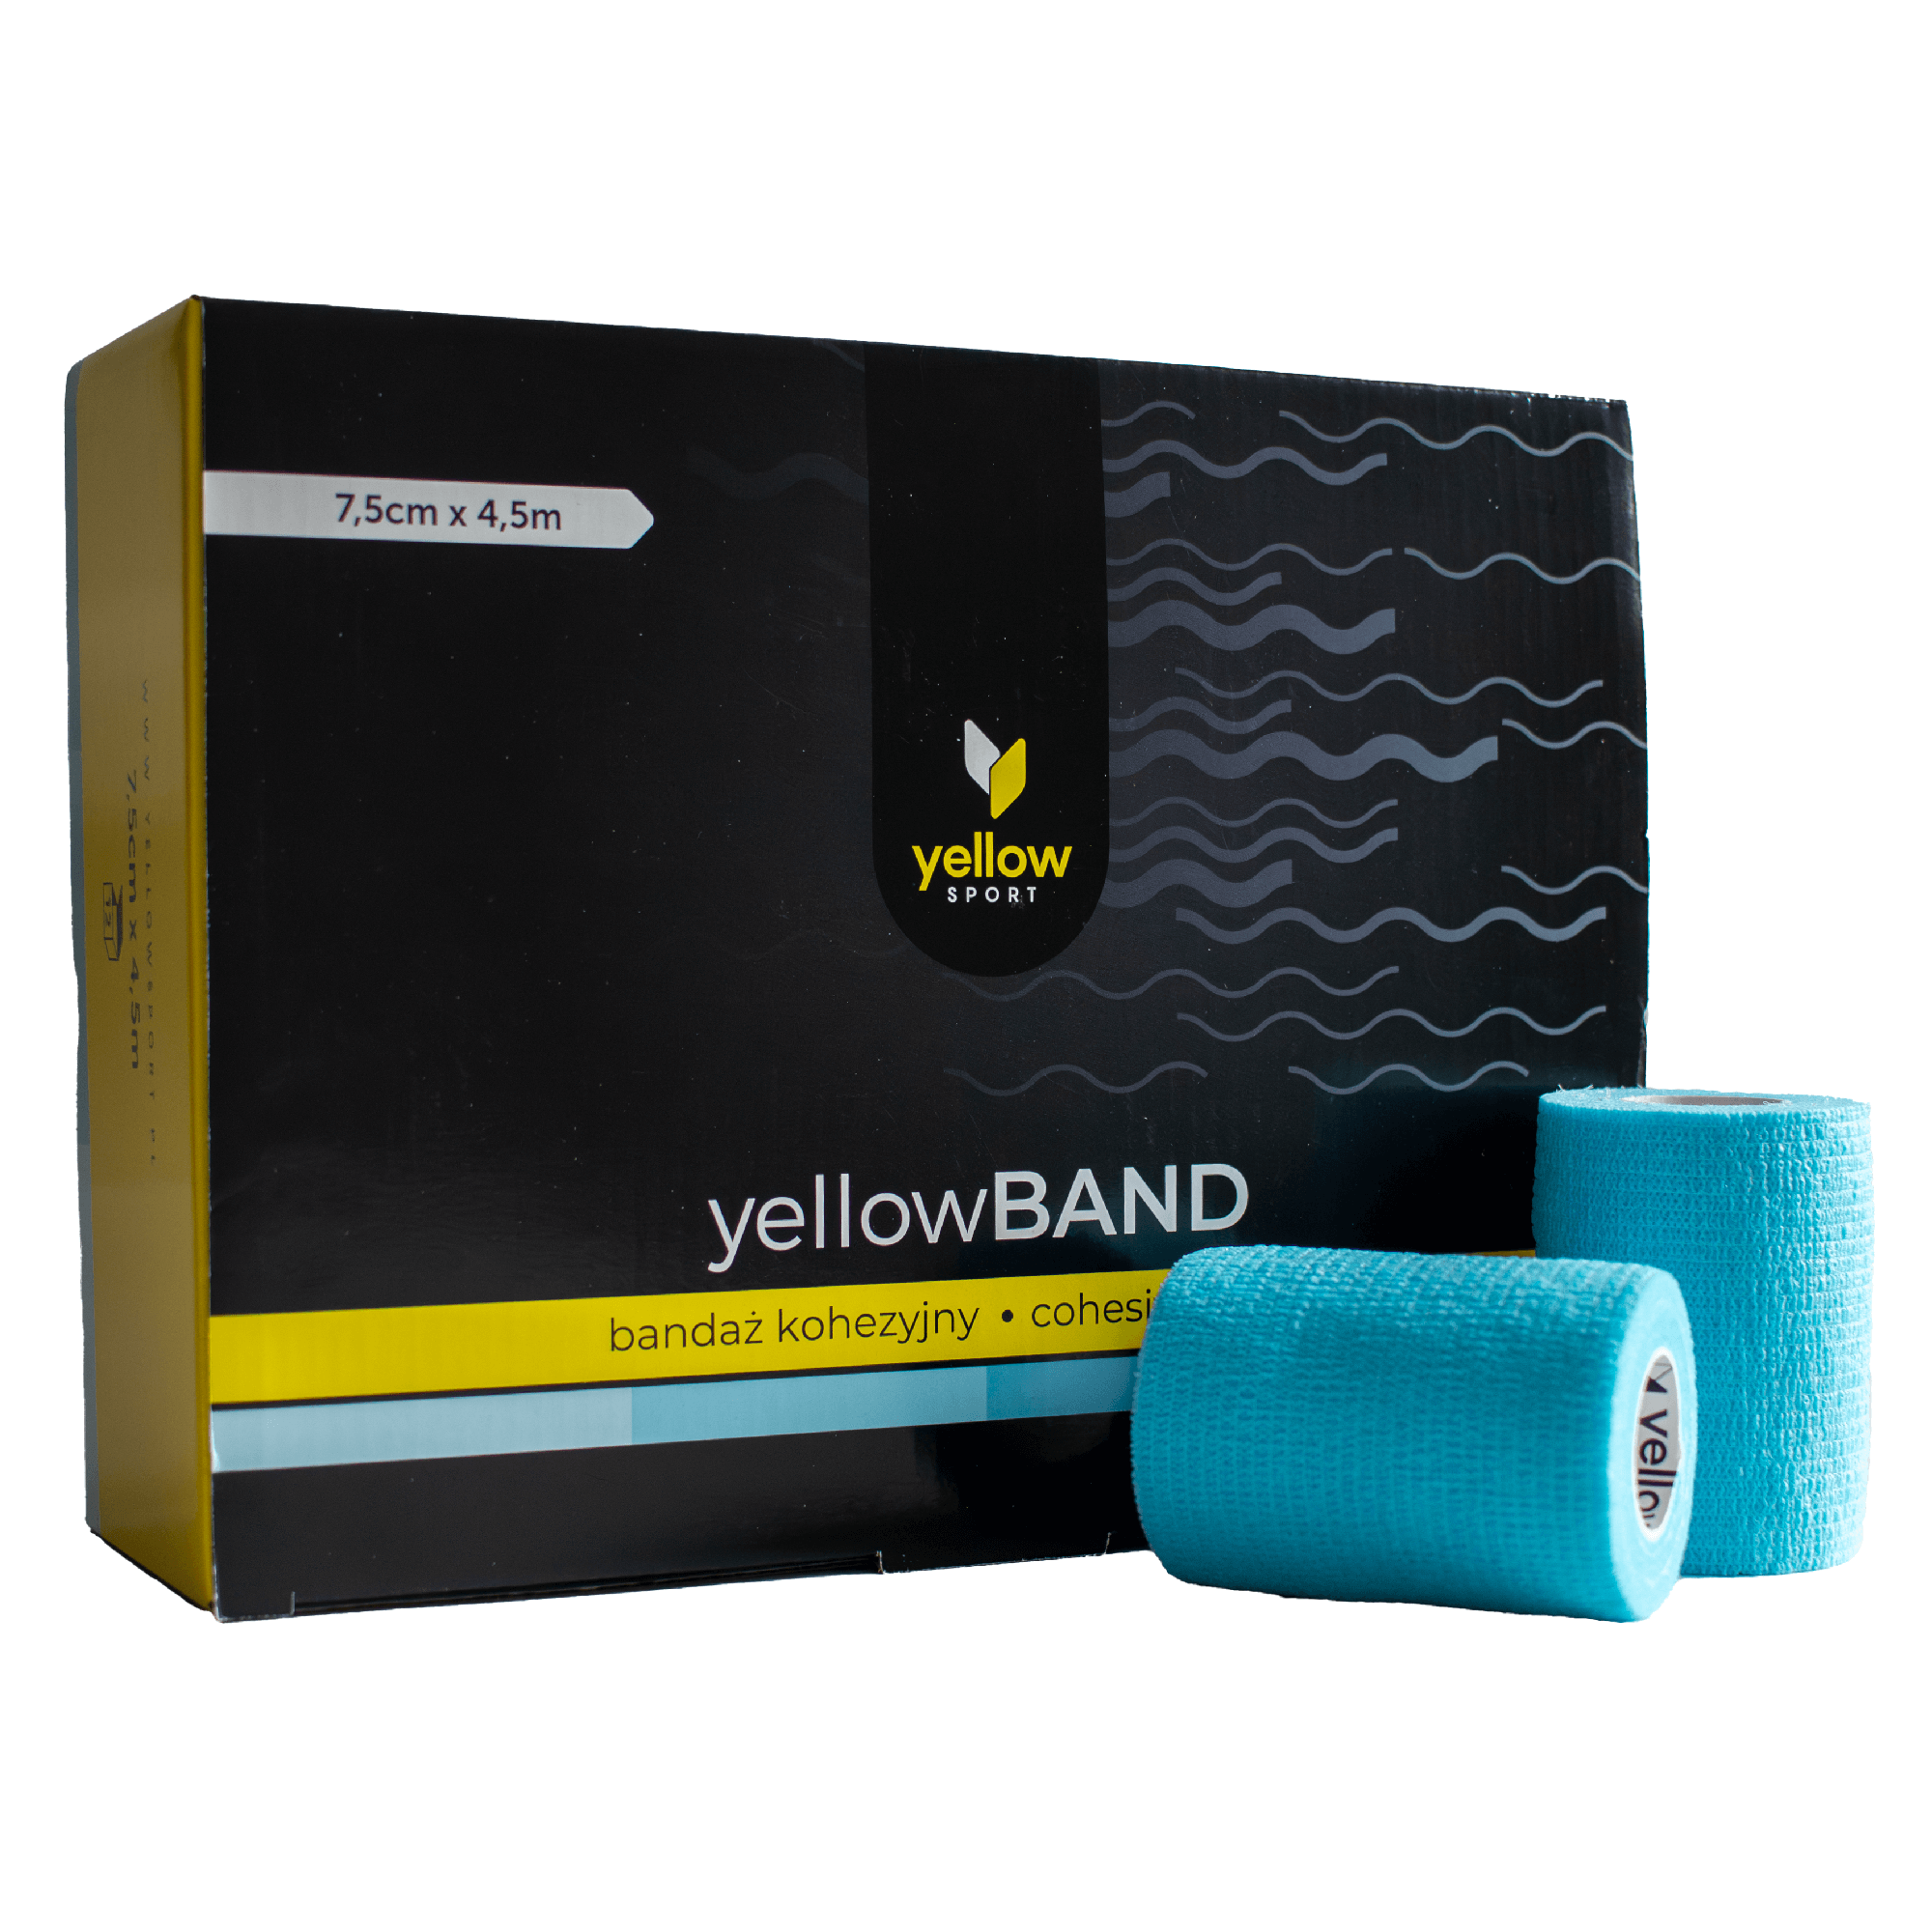 Bandaż kohezyjny yellowBAND - 7,5cm x 4,5m, jasnoniebieski zestaw 12 szt. 